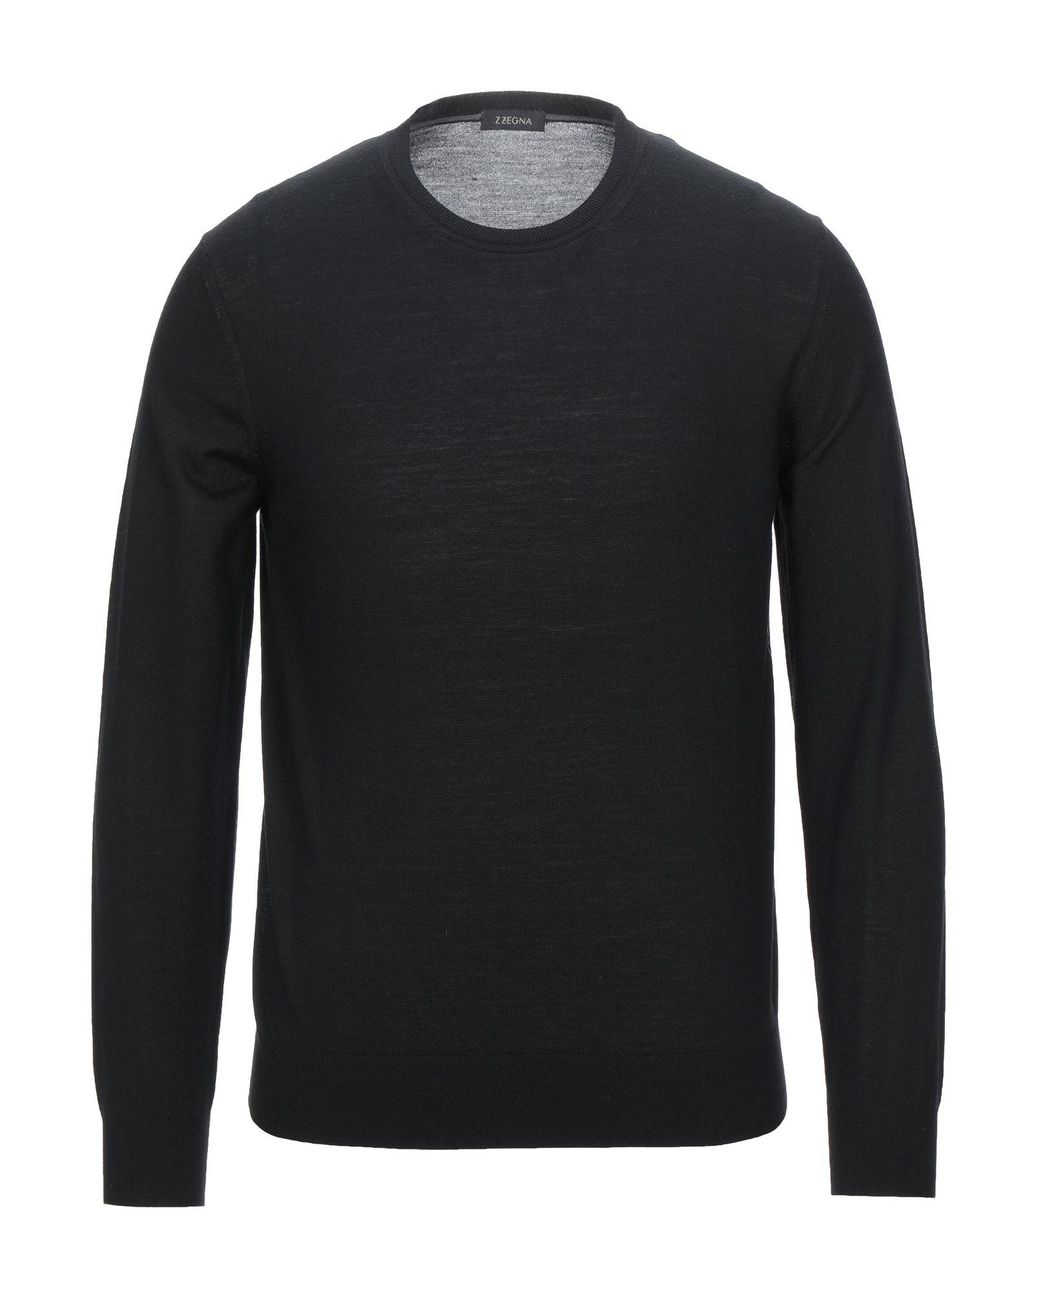 Z Zegna Wool Sweater in Black for Men - Lyst